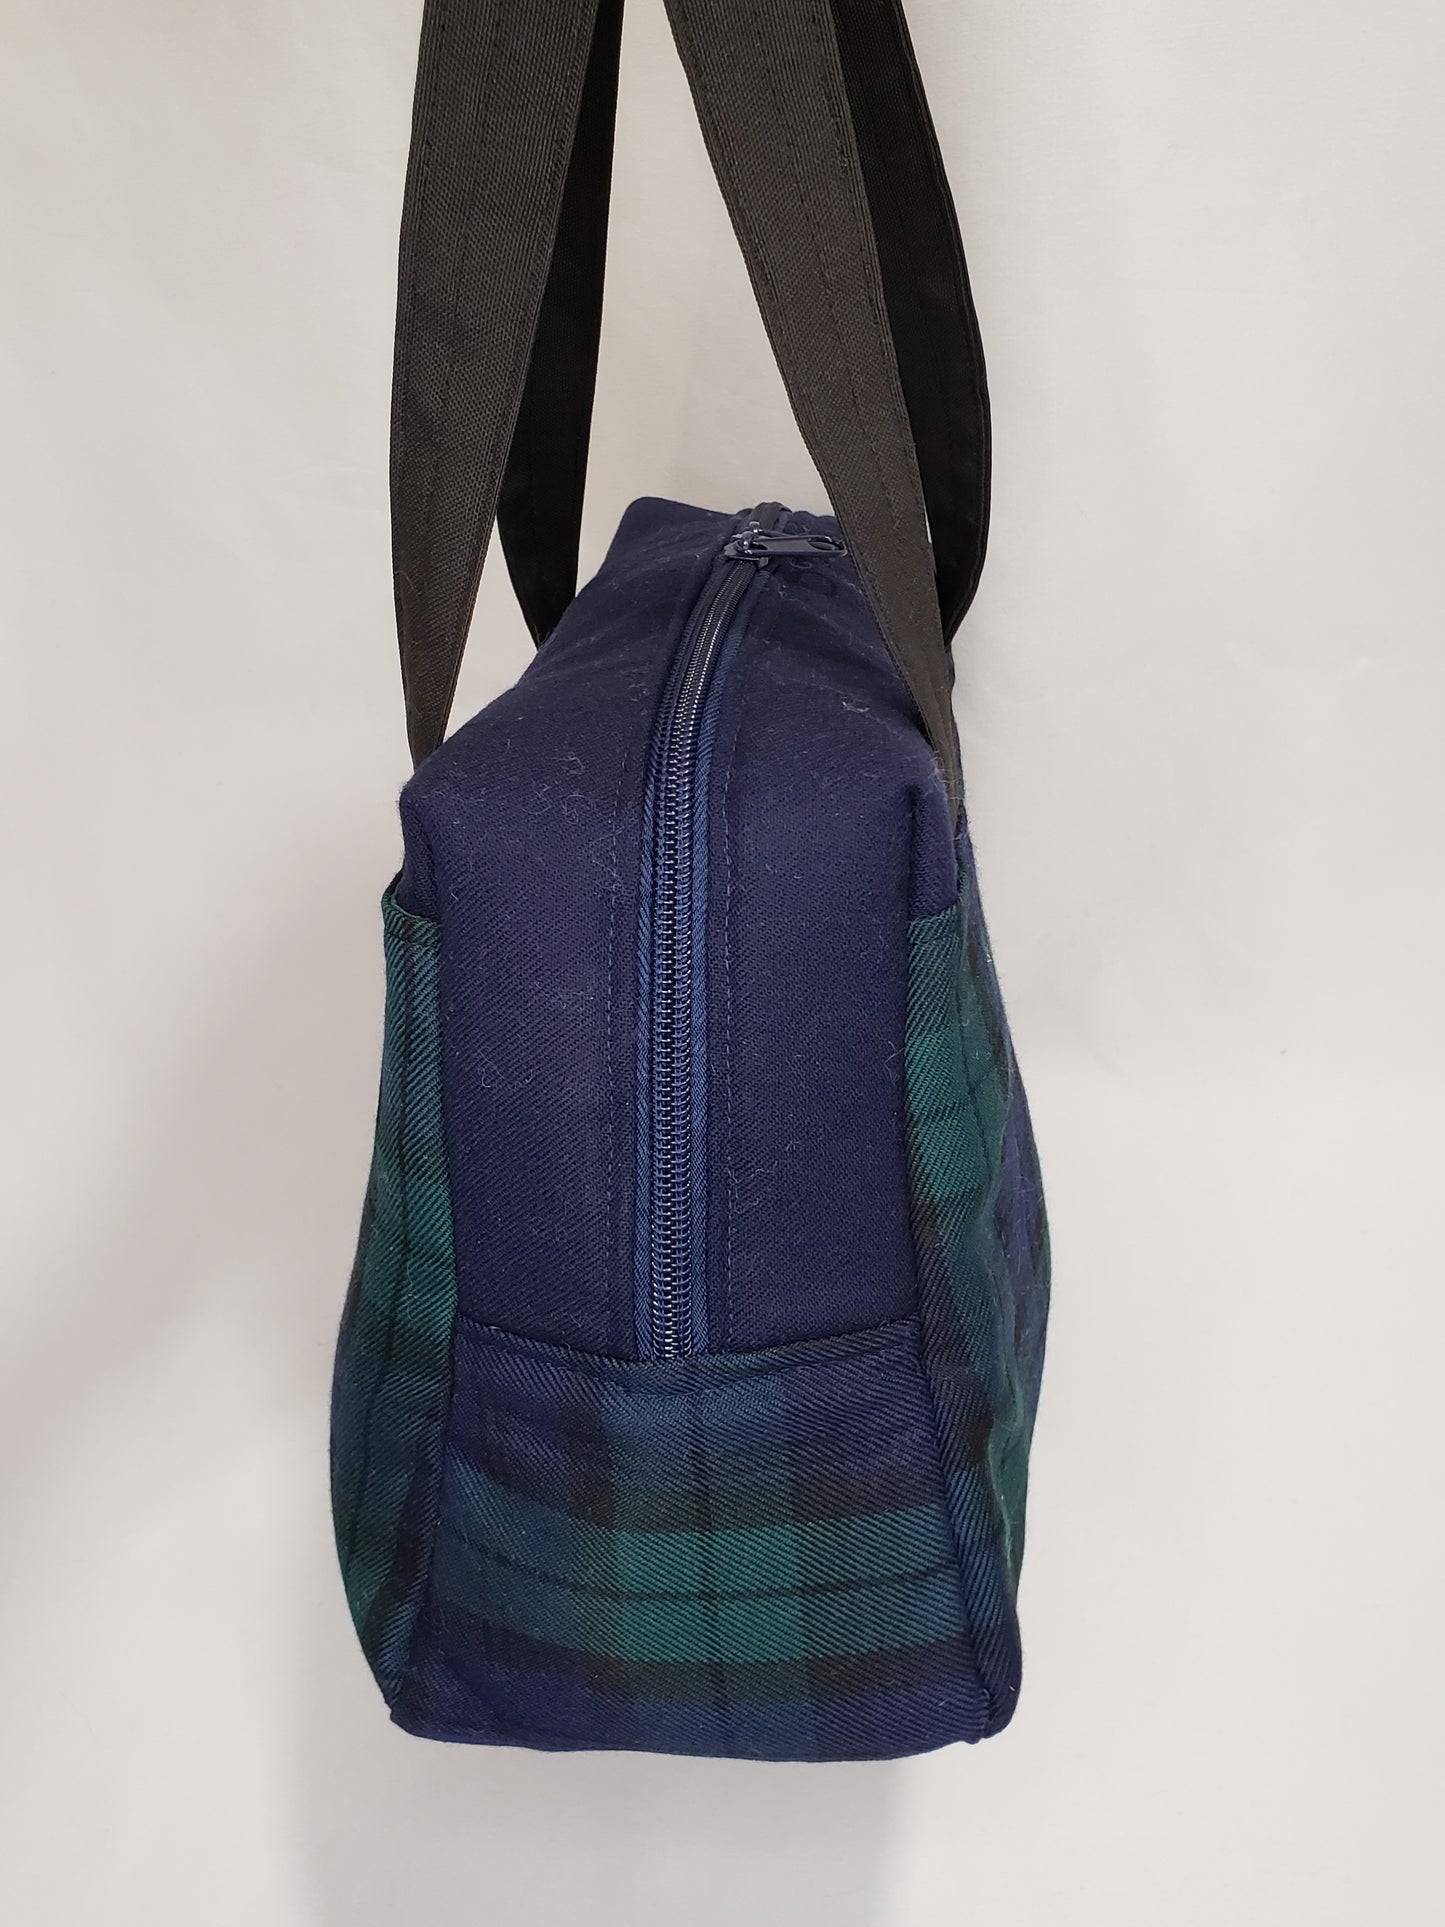 Handbag, Navy & Green Tartan handbag, Navy & Green Boston Bag, Navy & Green project bag, Zippered Project bag, Zippered Handbag, Zippered Tartan bag